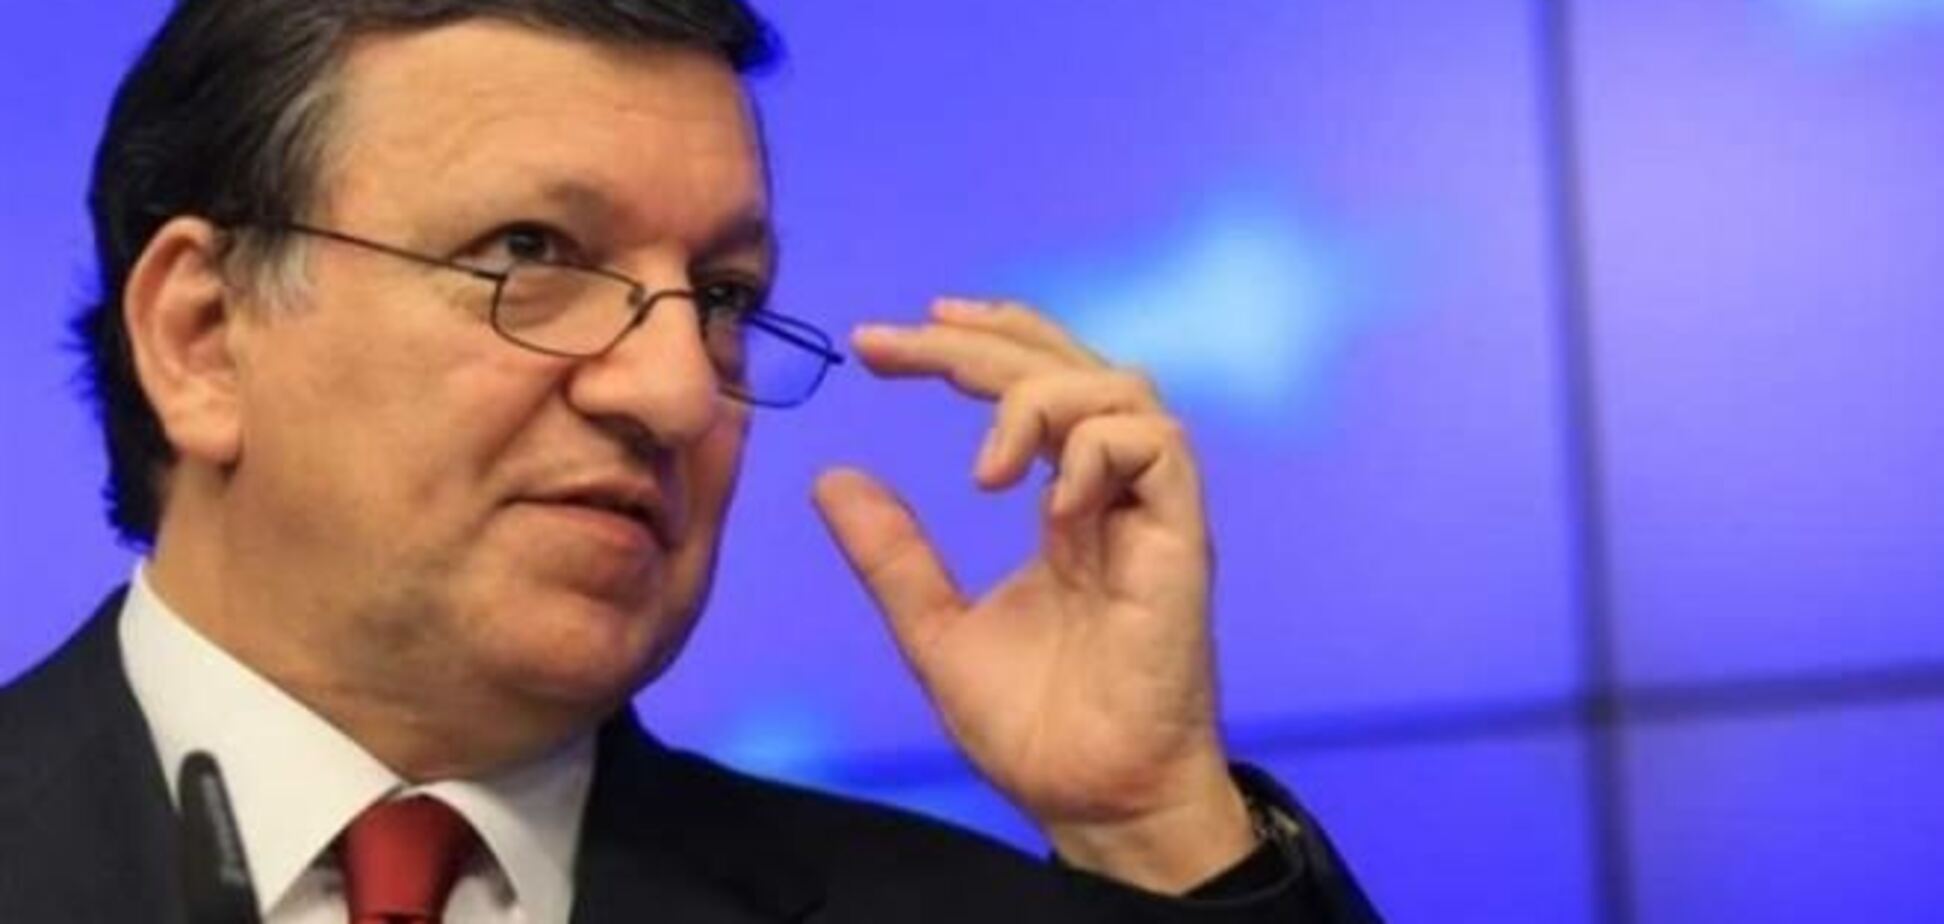 ЄС не турбують угоди України з Росією - Баррозу